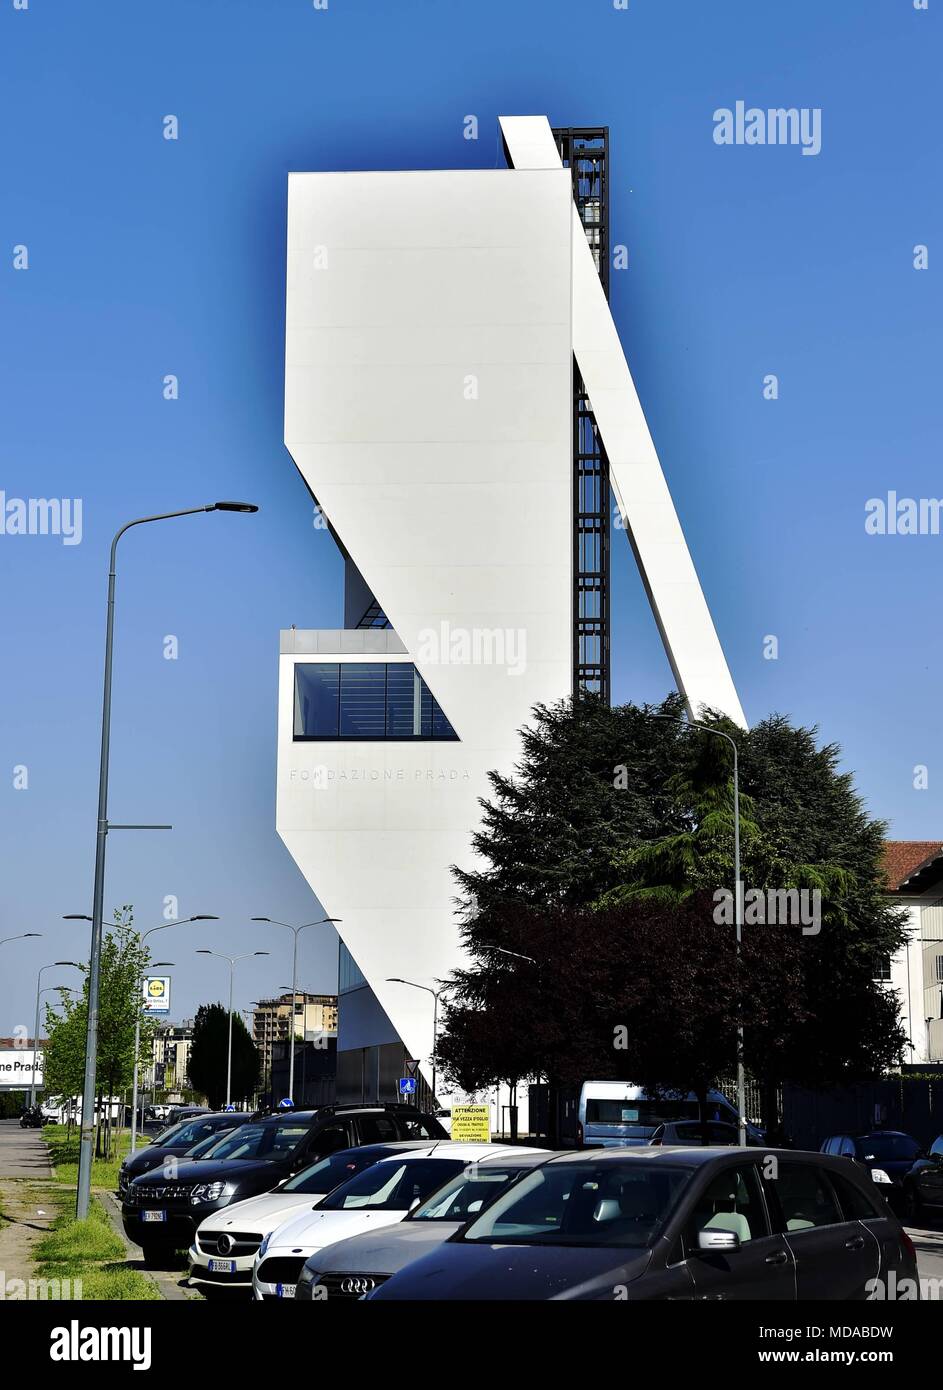 La Fondazione Prada (Largo Isarco) anteprima della torre progettata dalla  archistar Rem Koolhaas con Chris van Duijn e Federico Pompignoli dell'OMA  studio. (Duilio Piaggesi, Milano - 2018-04-18) ps la foto può essere